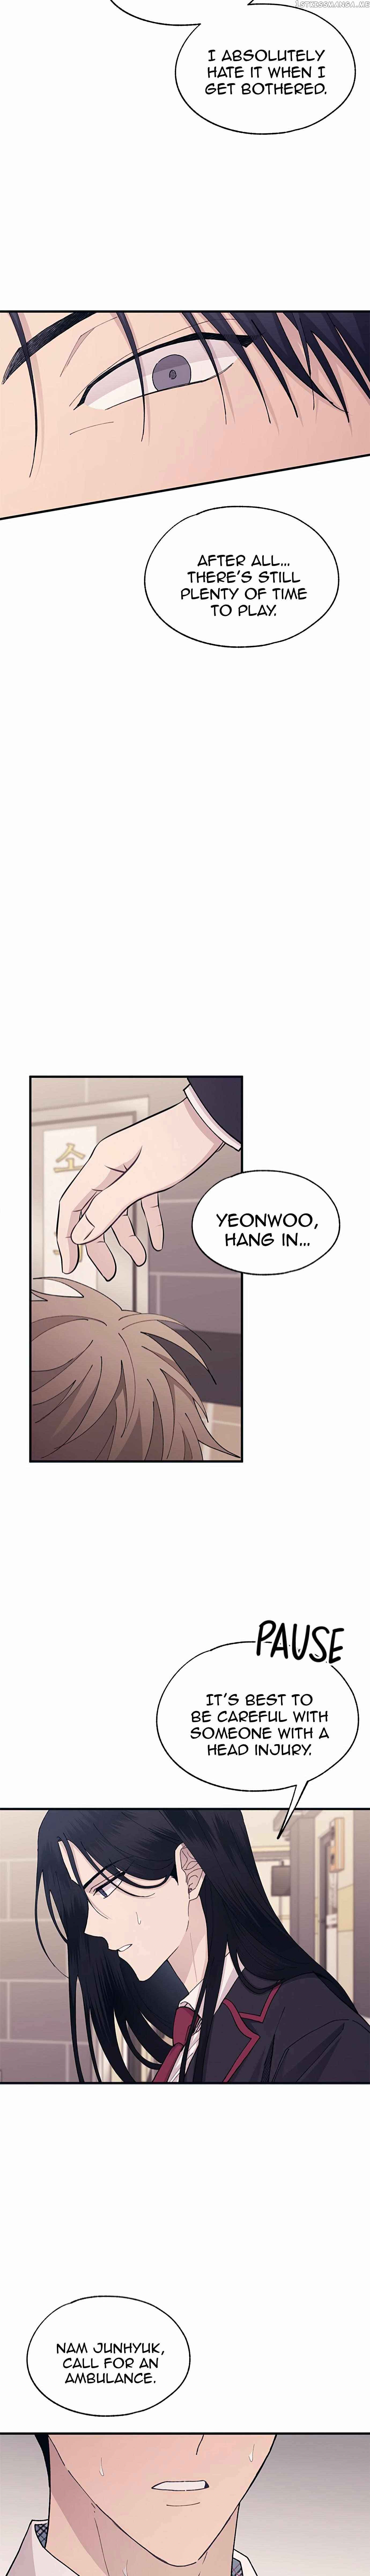 Yeonwoo’s Innocence chapter 121